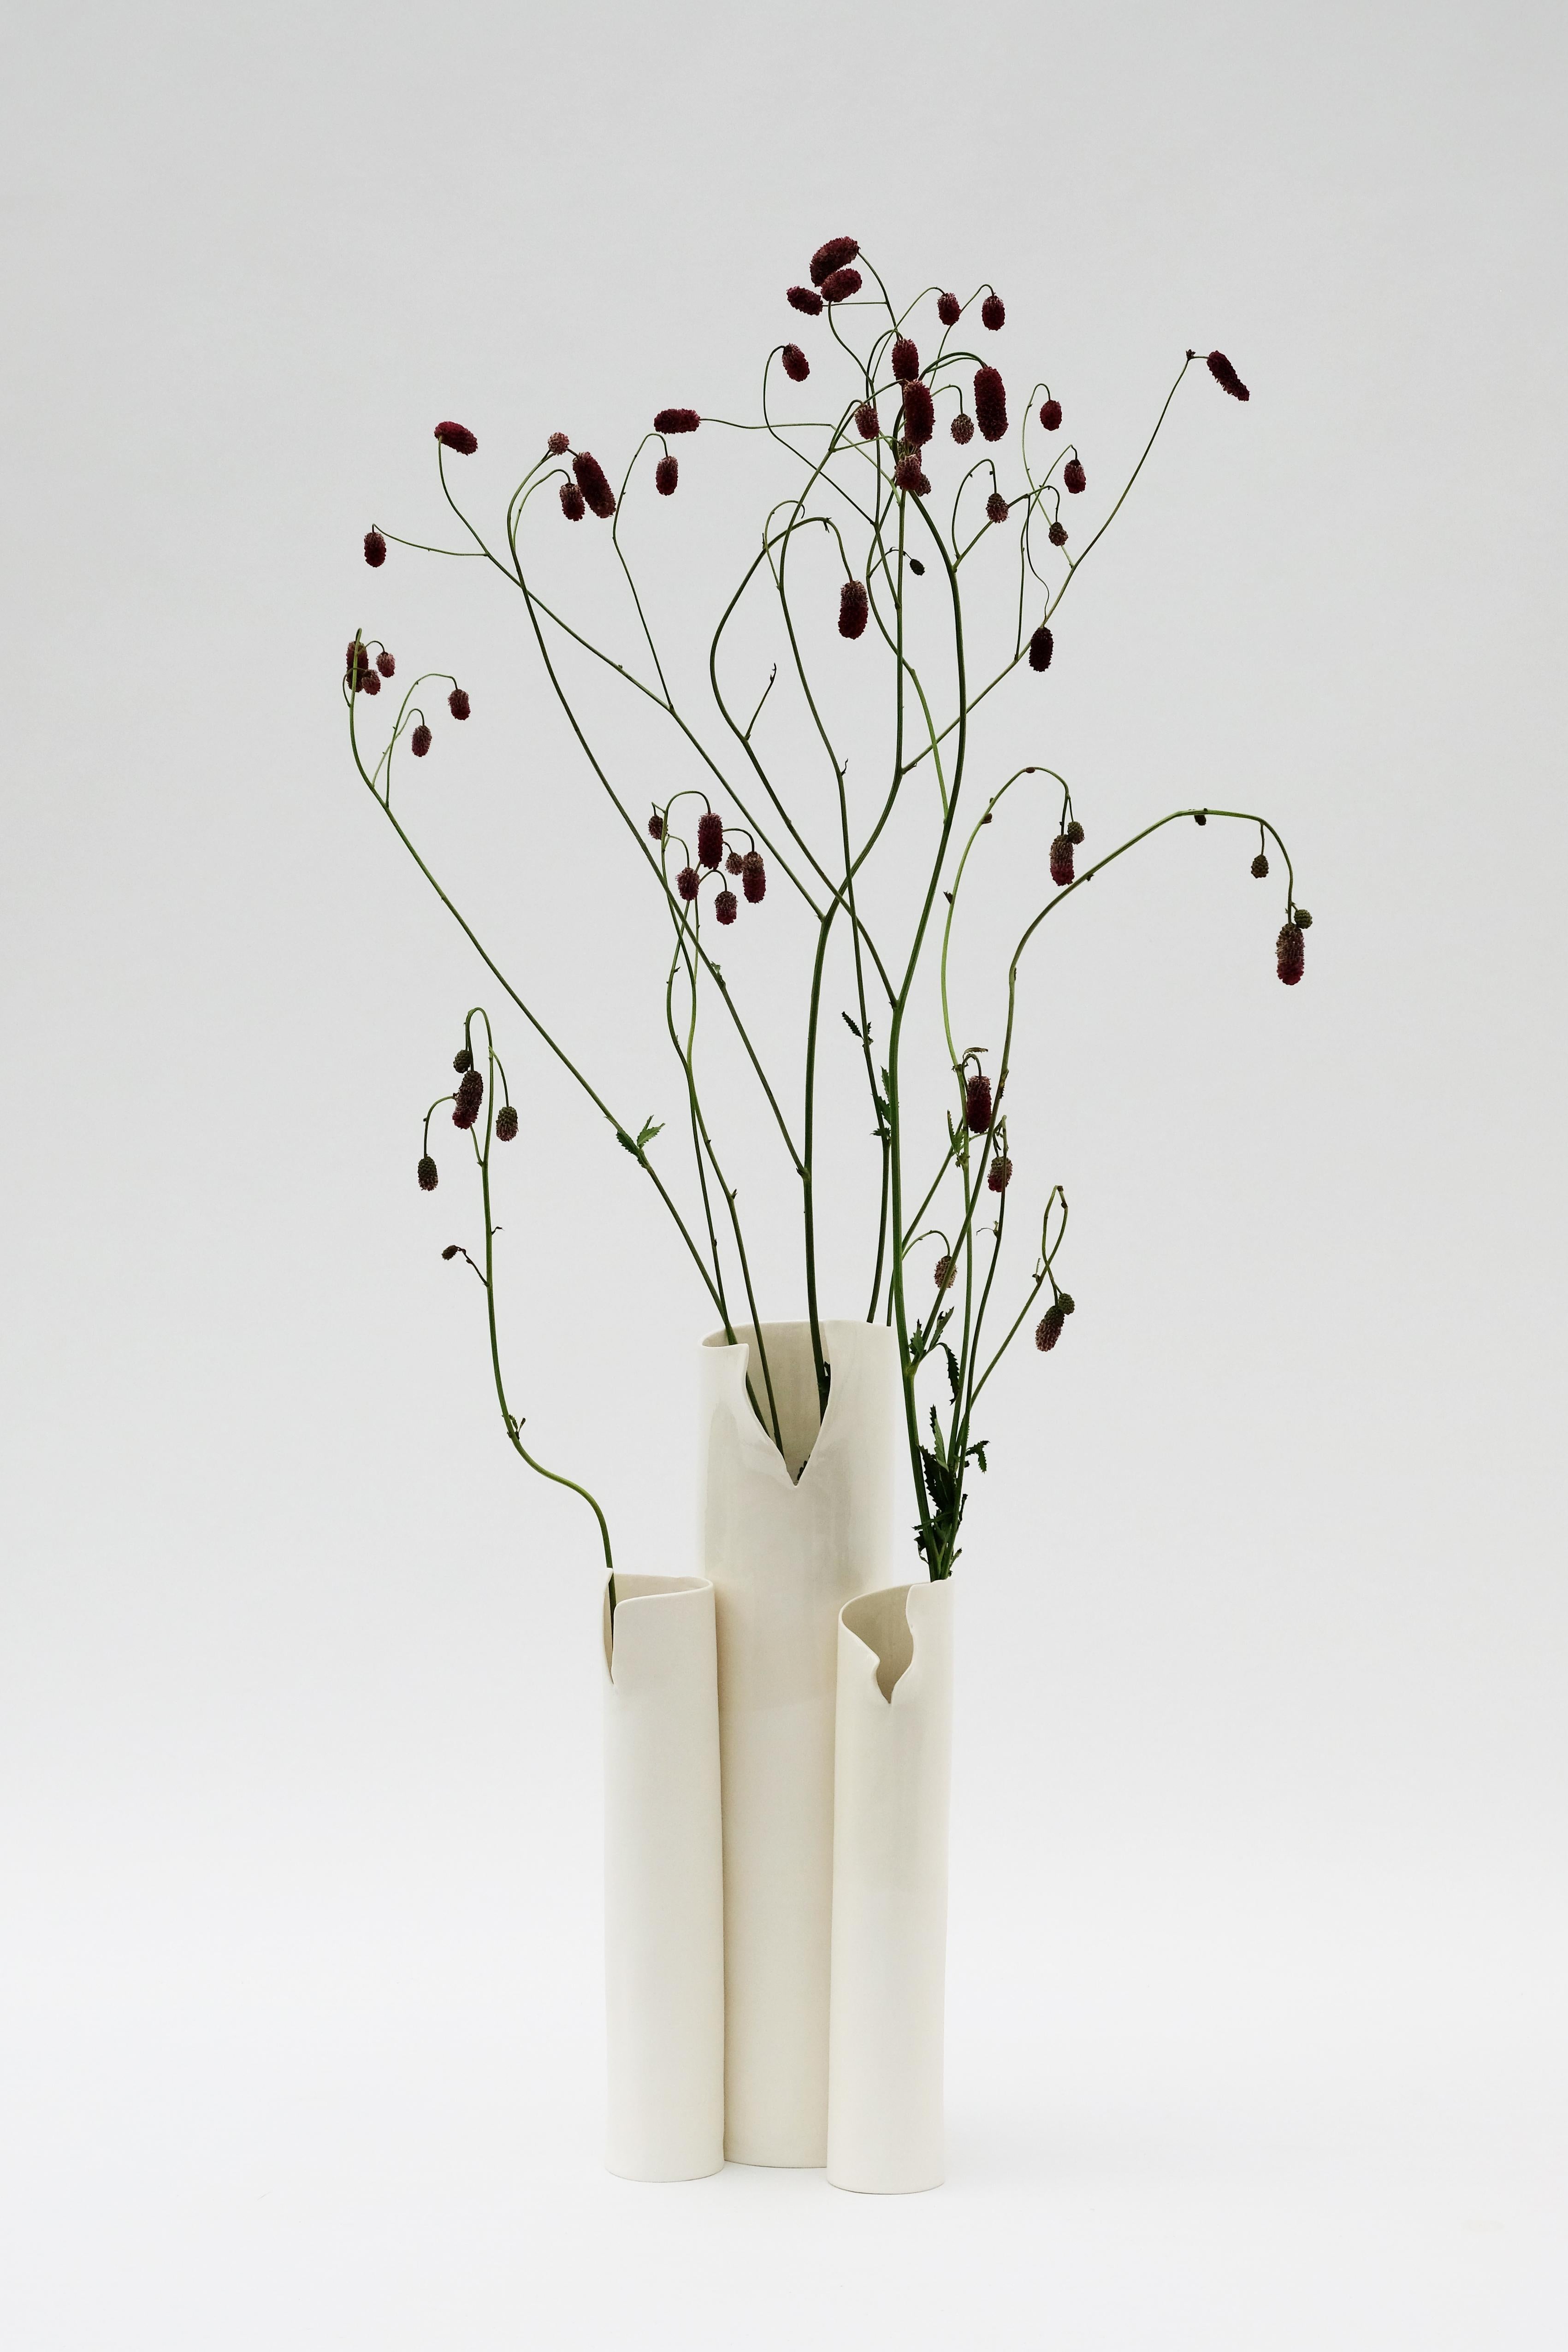 reine weiße Trio-Vase von Biancodichina
Einzigartiges Stück.
Abmessungen: T 16 x B 25 x H 37 cm. 
MATERIALIEN: Limoges-Porzellan. Innen glasiert und glänzend, außen Biskuit und Seidenglanz.

Diese Vasen werden vollständig von Hand in einer